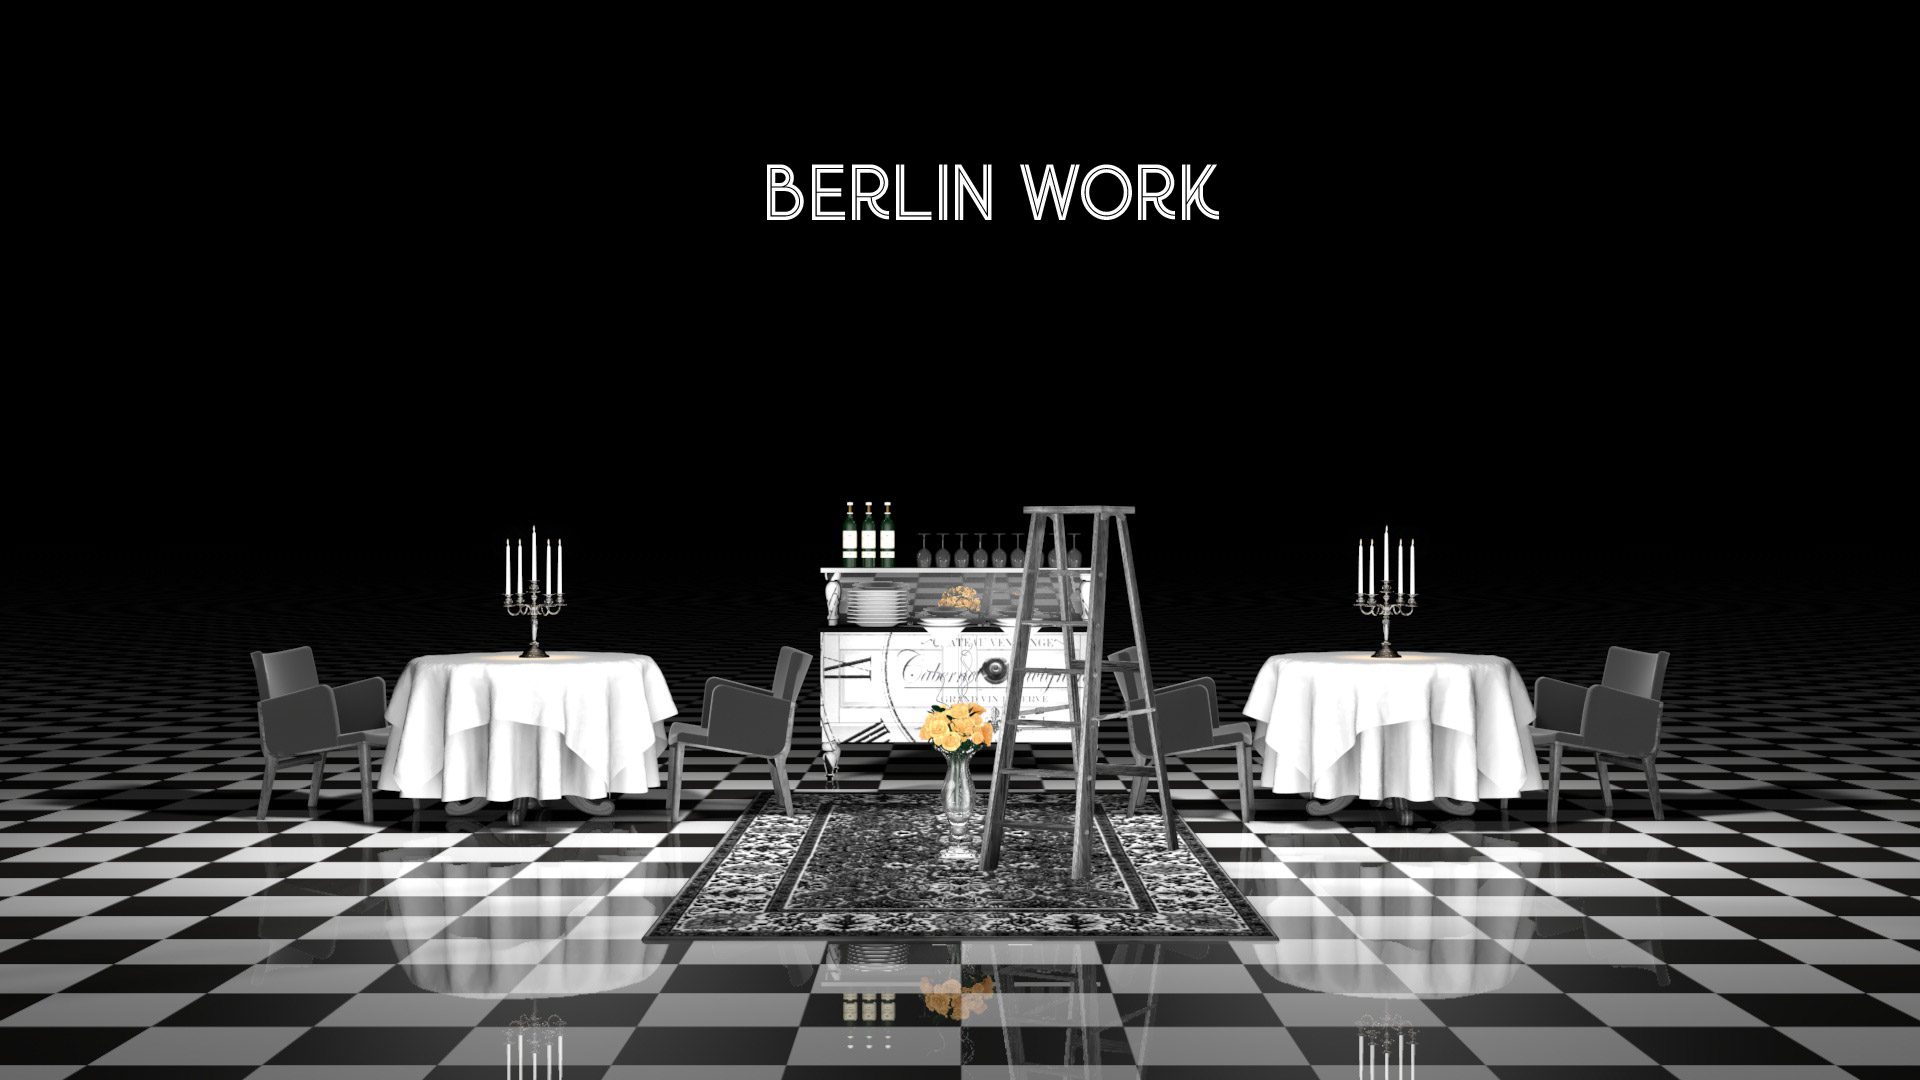 Berlinwork